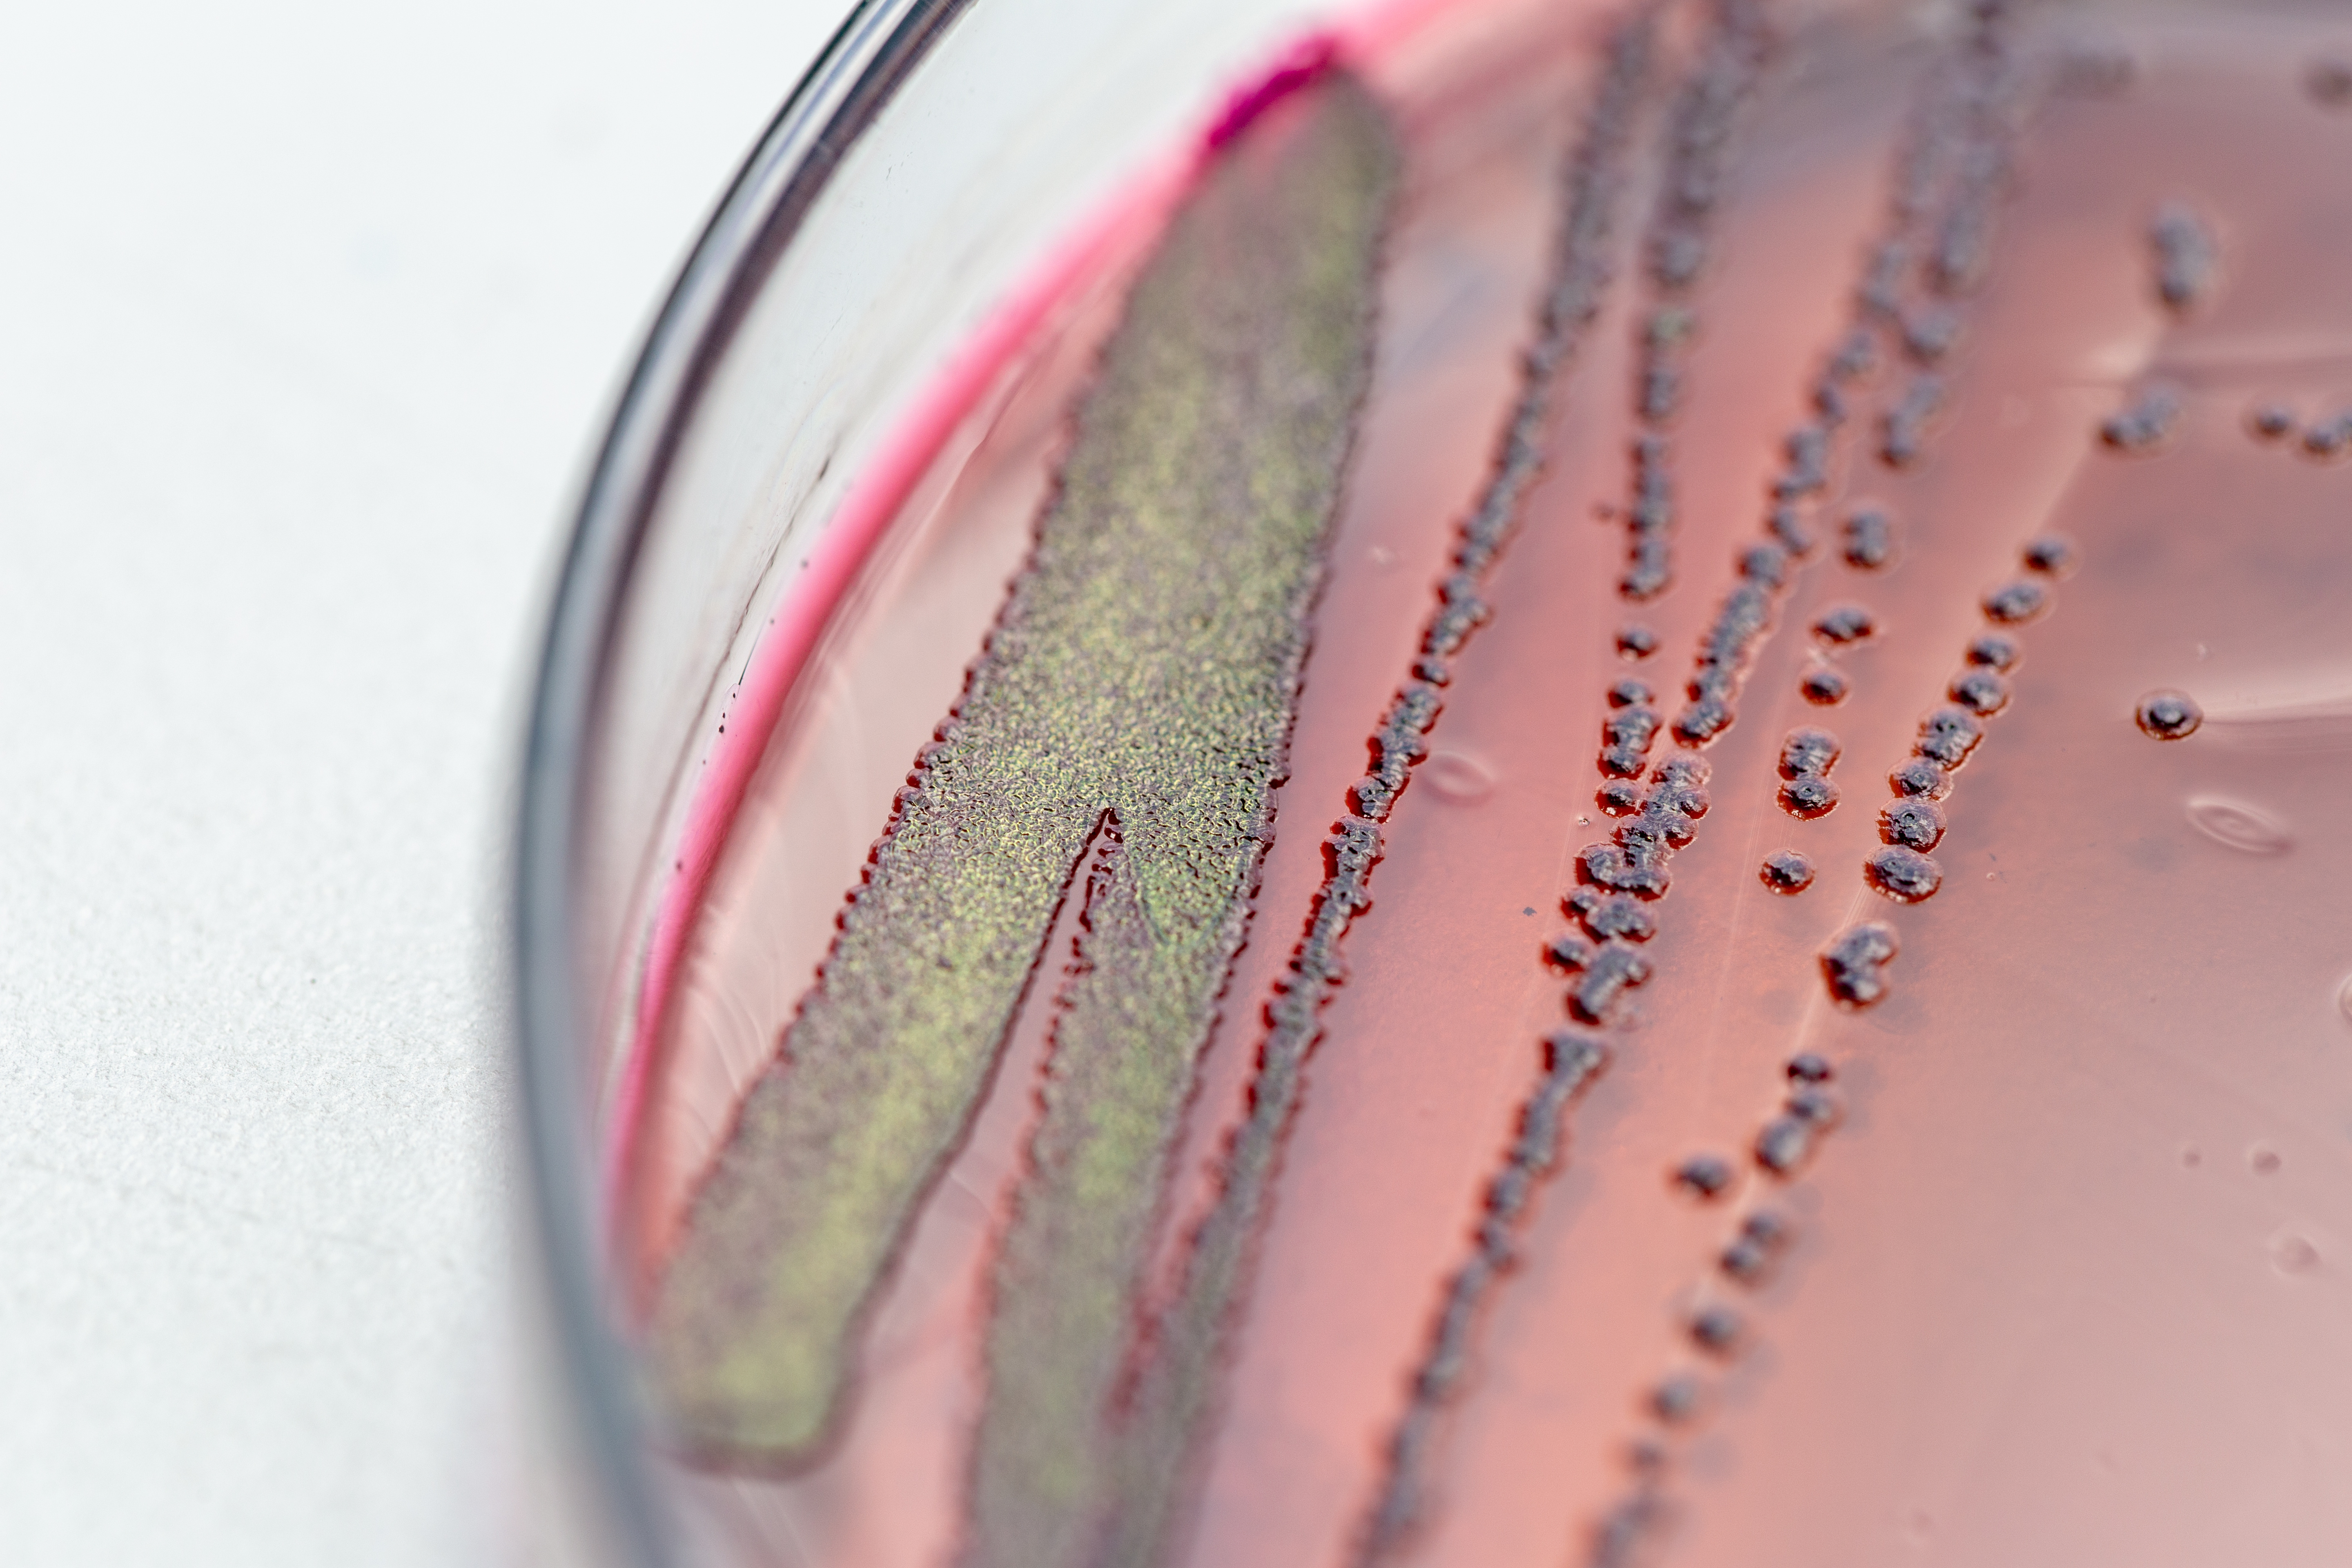 Décrypter le processus de métamorphose ou « filamentation avant l’infection » des bactéries E. coli uropathogènes (UPEC) va permettre de développer de nouveaux traitements (Visuel Adobe Stock 205547933)